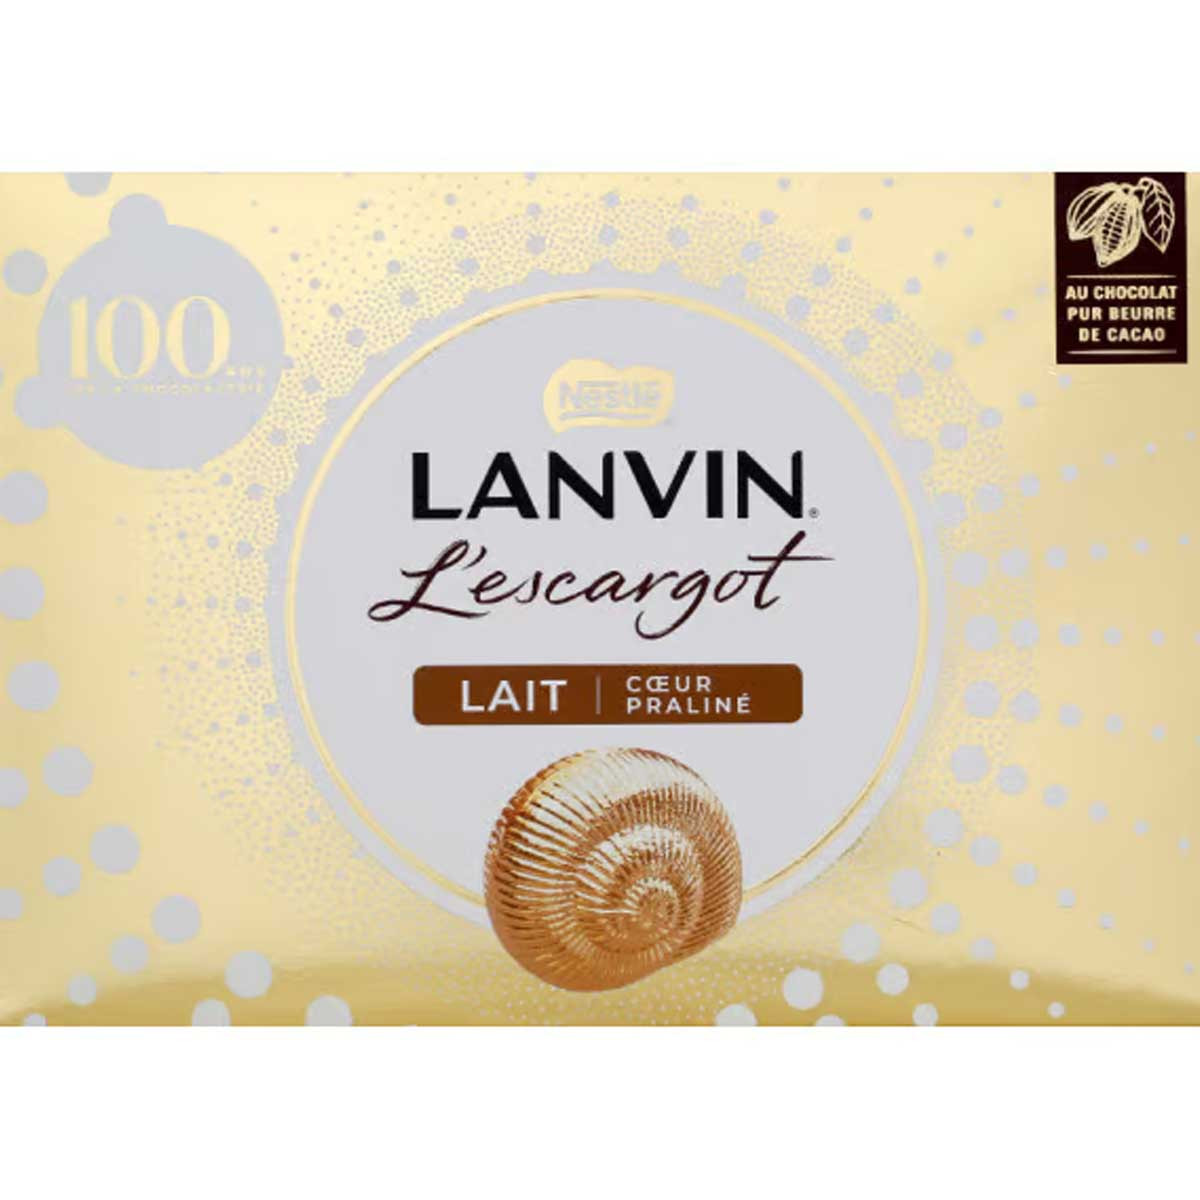 L'escargot mini lait Lanvin